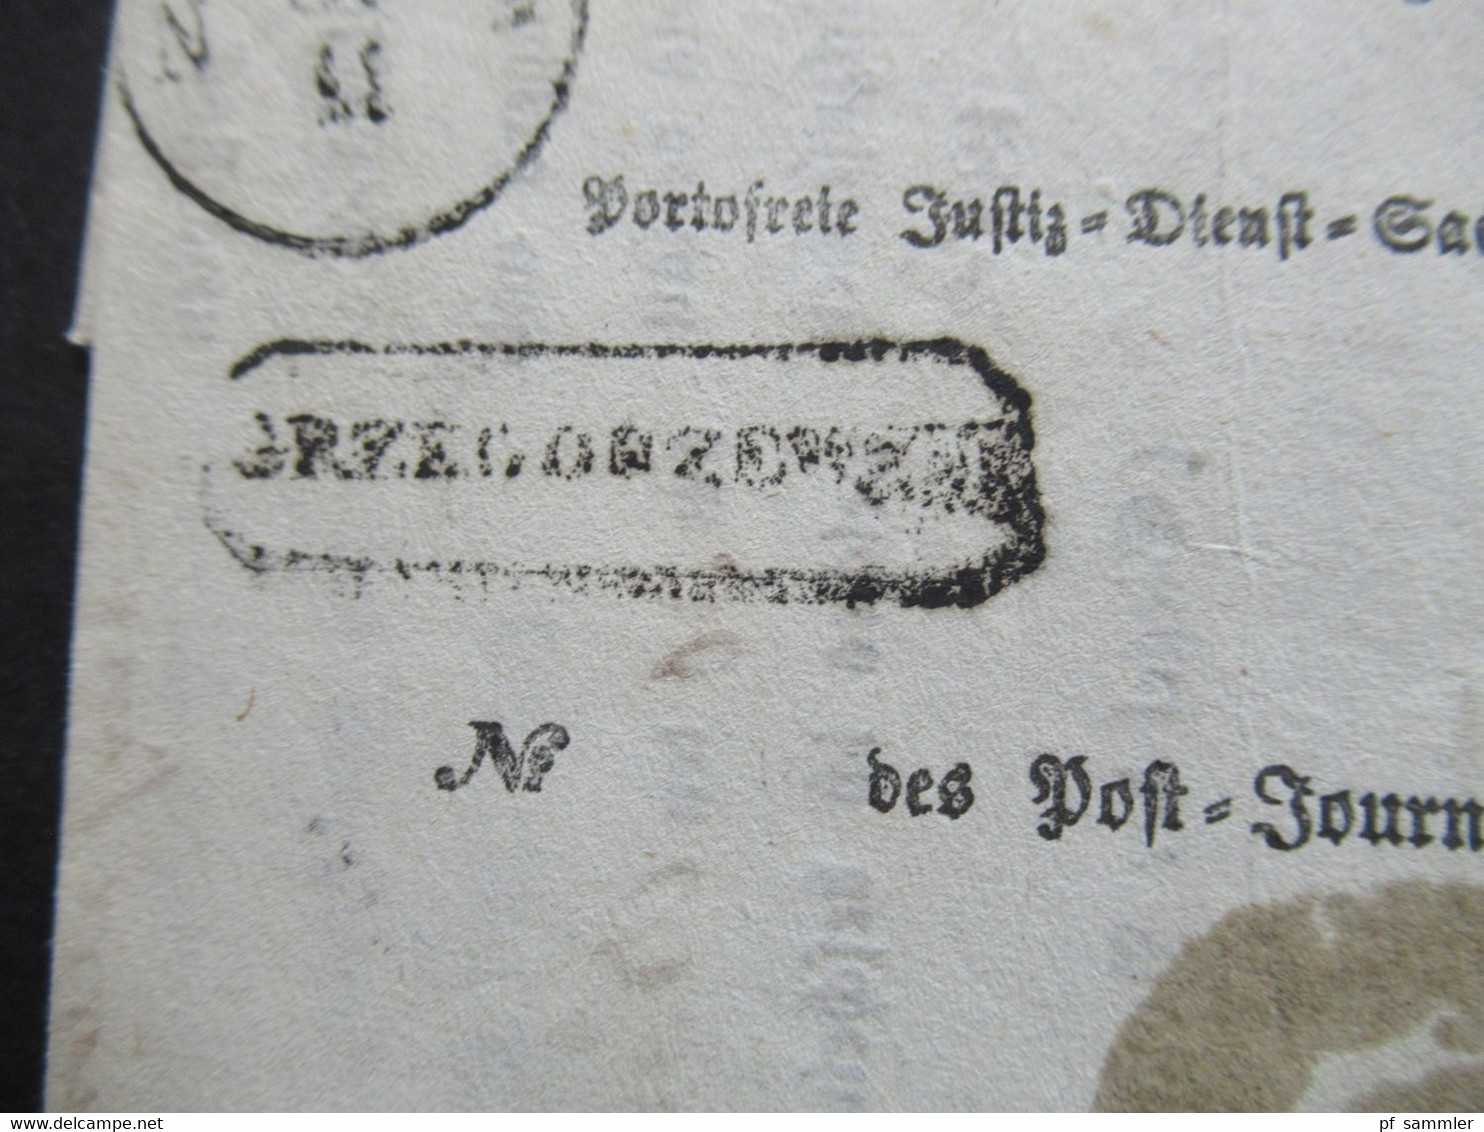 AD 30.11.1860 Preussen Pommern Ra2 Dirschau Justiz Dienst Sache / Documentum Insinuationis Einige Stempel!! - Lettres & Documents